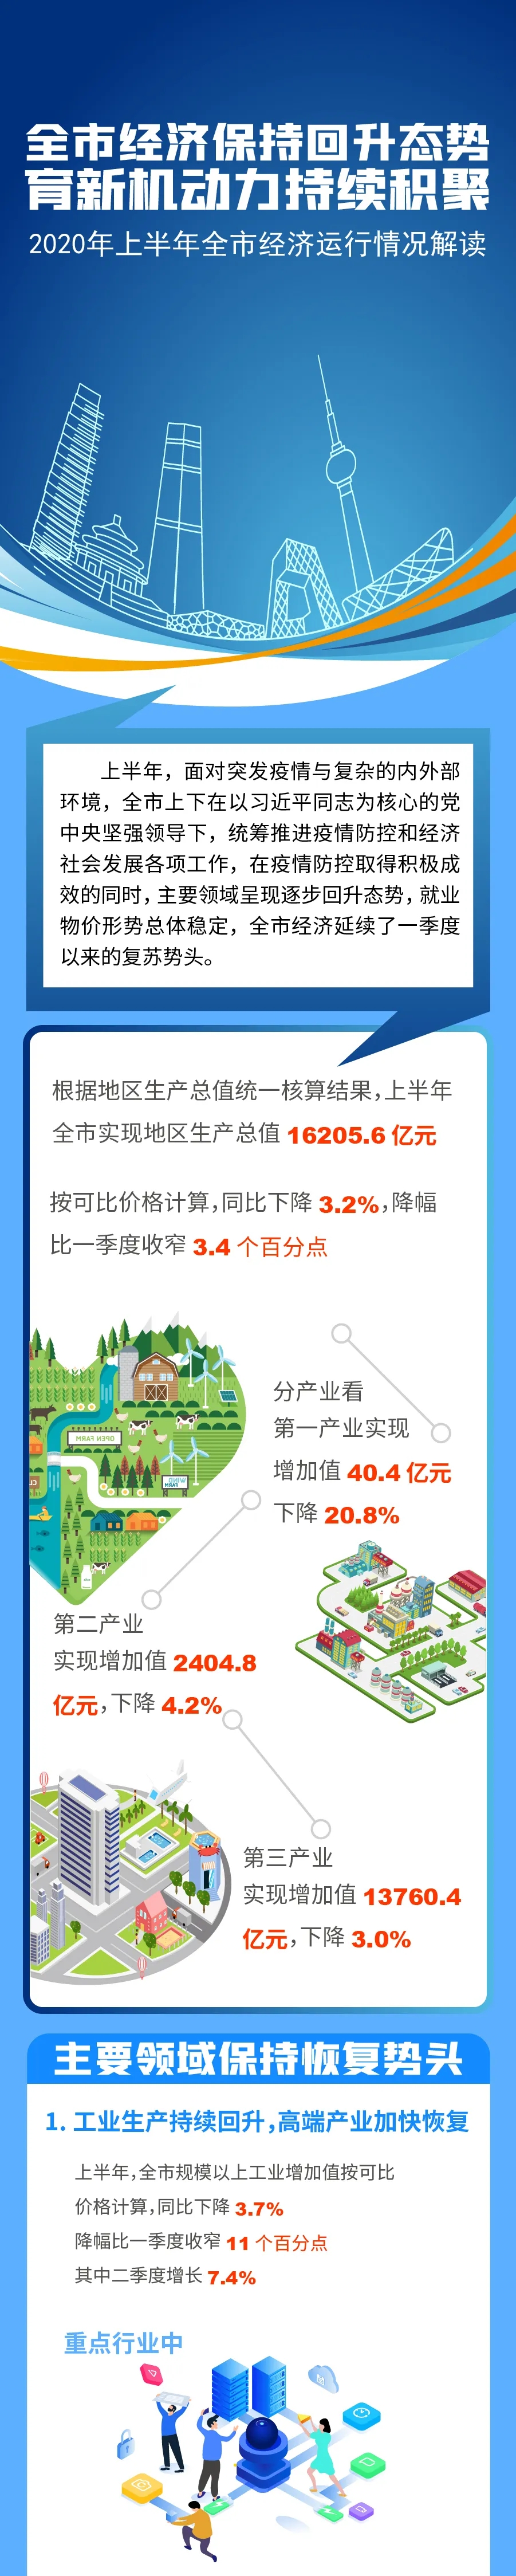 图解2020年上半年北京市经济运行情况